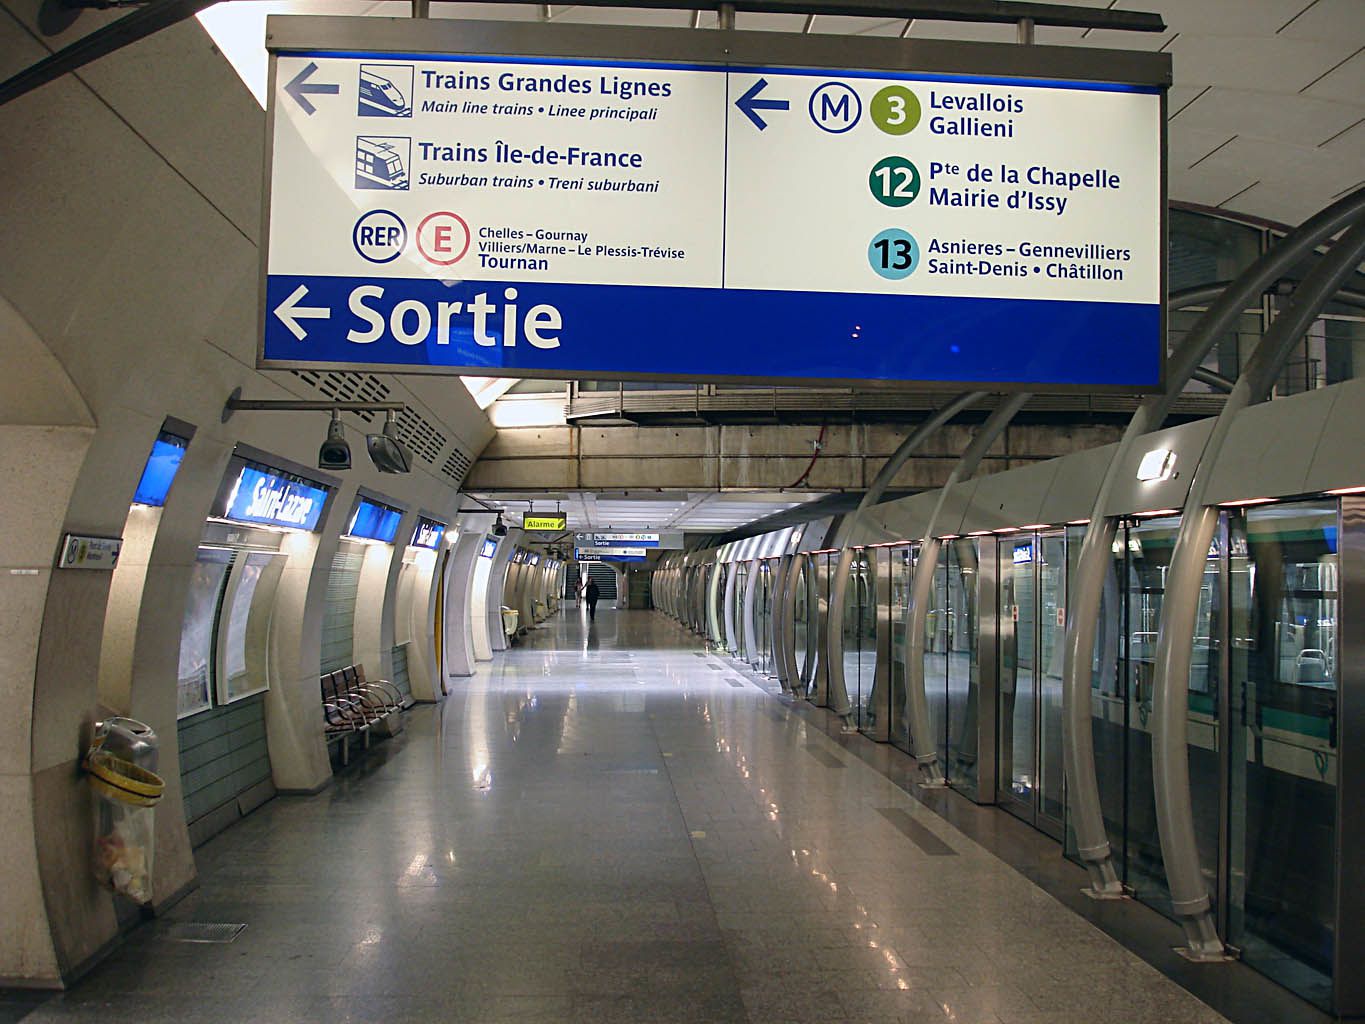 Renouveau de la Gare Saint-Lazare